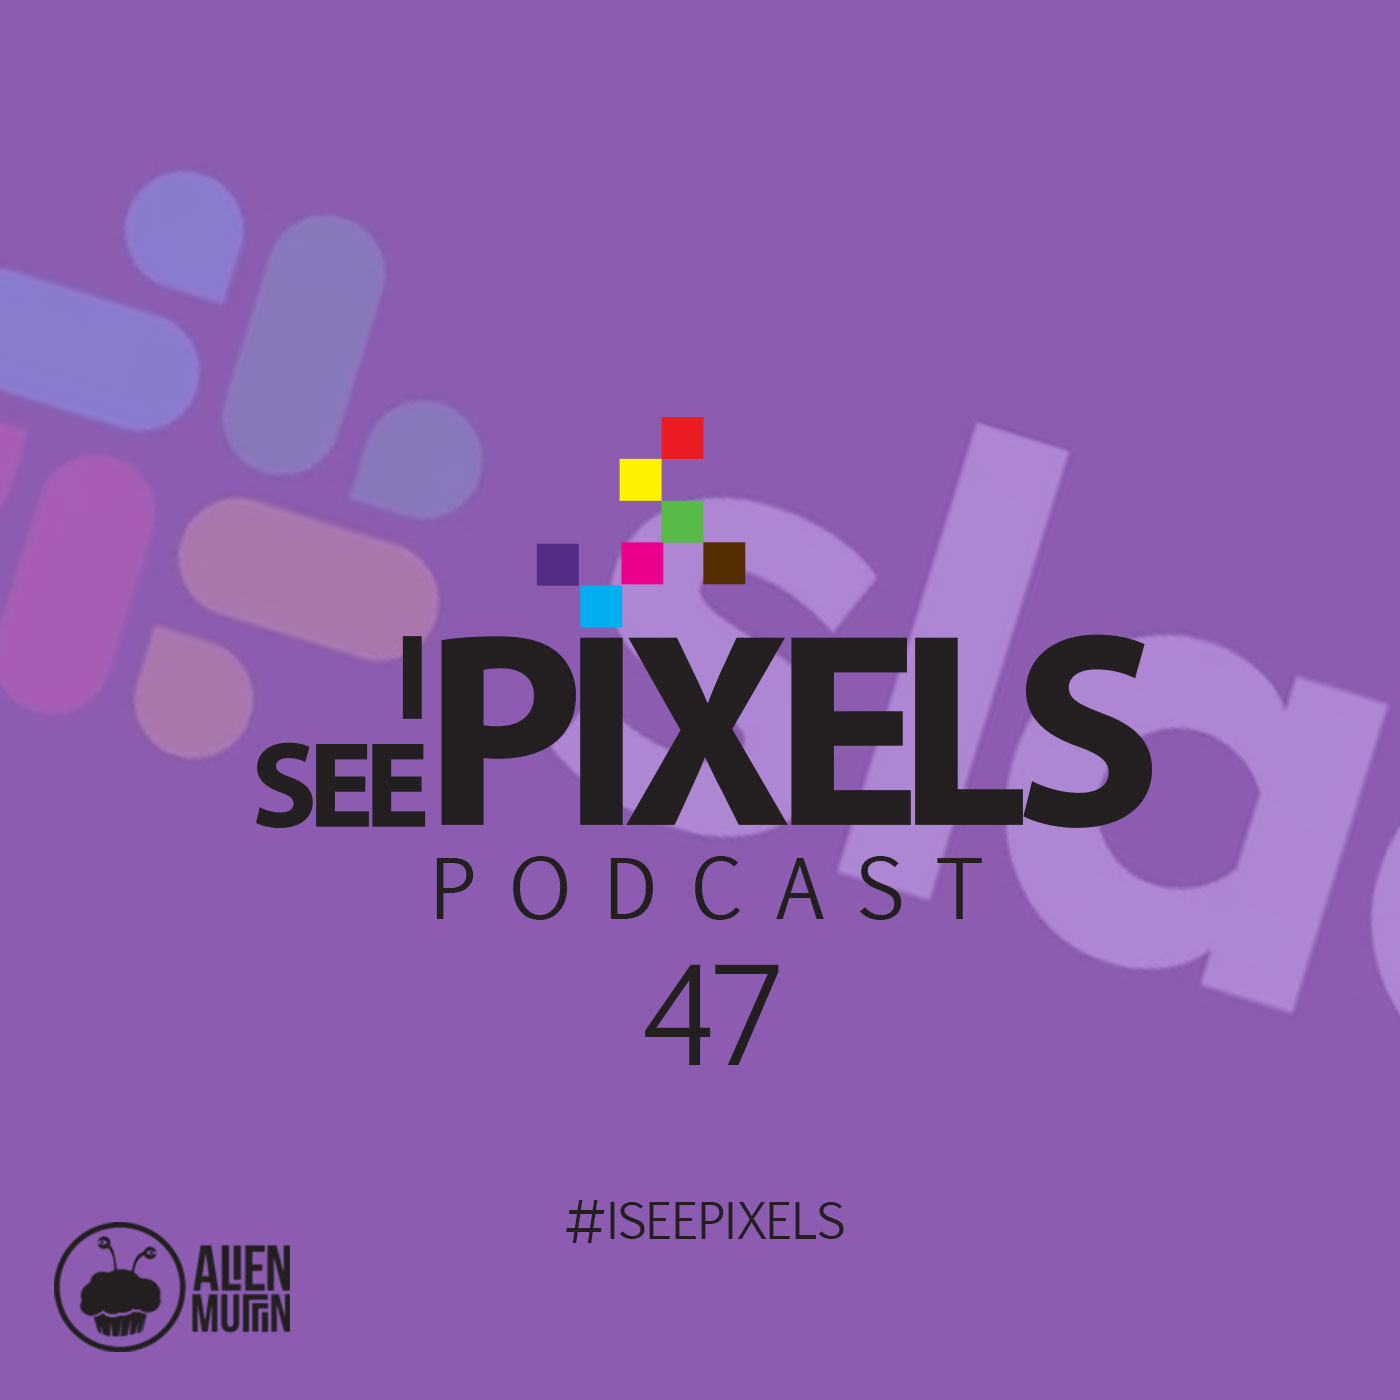 Slacks new logo and Political Branding - I See Pixels Podcast Episode 47